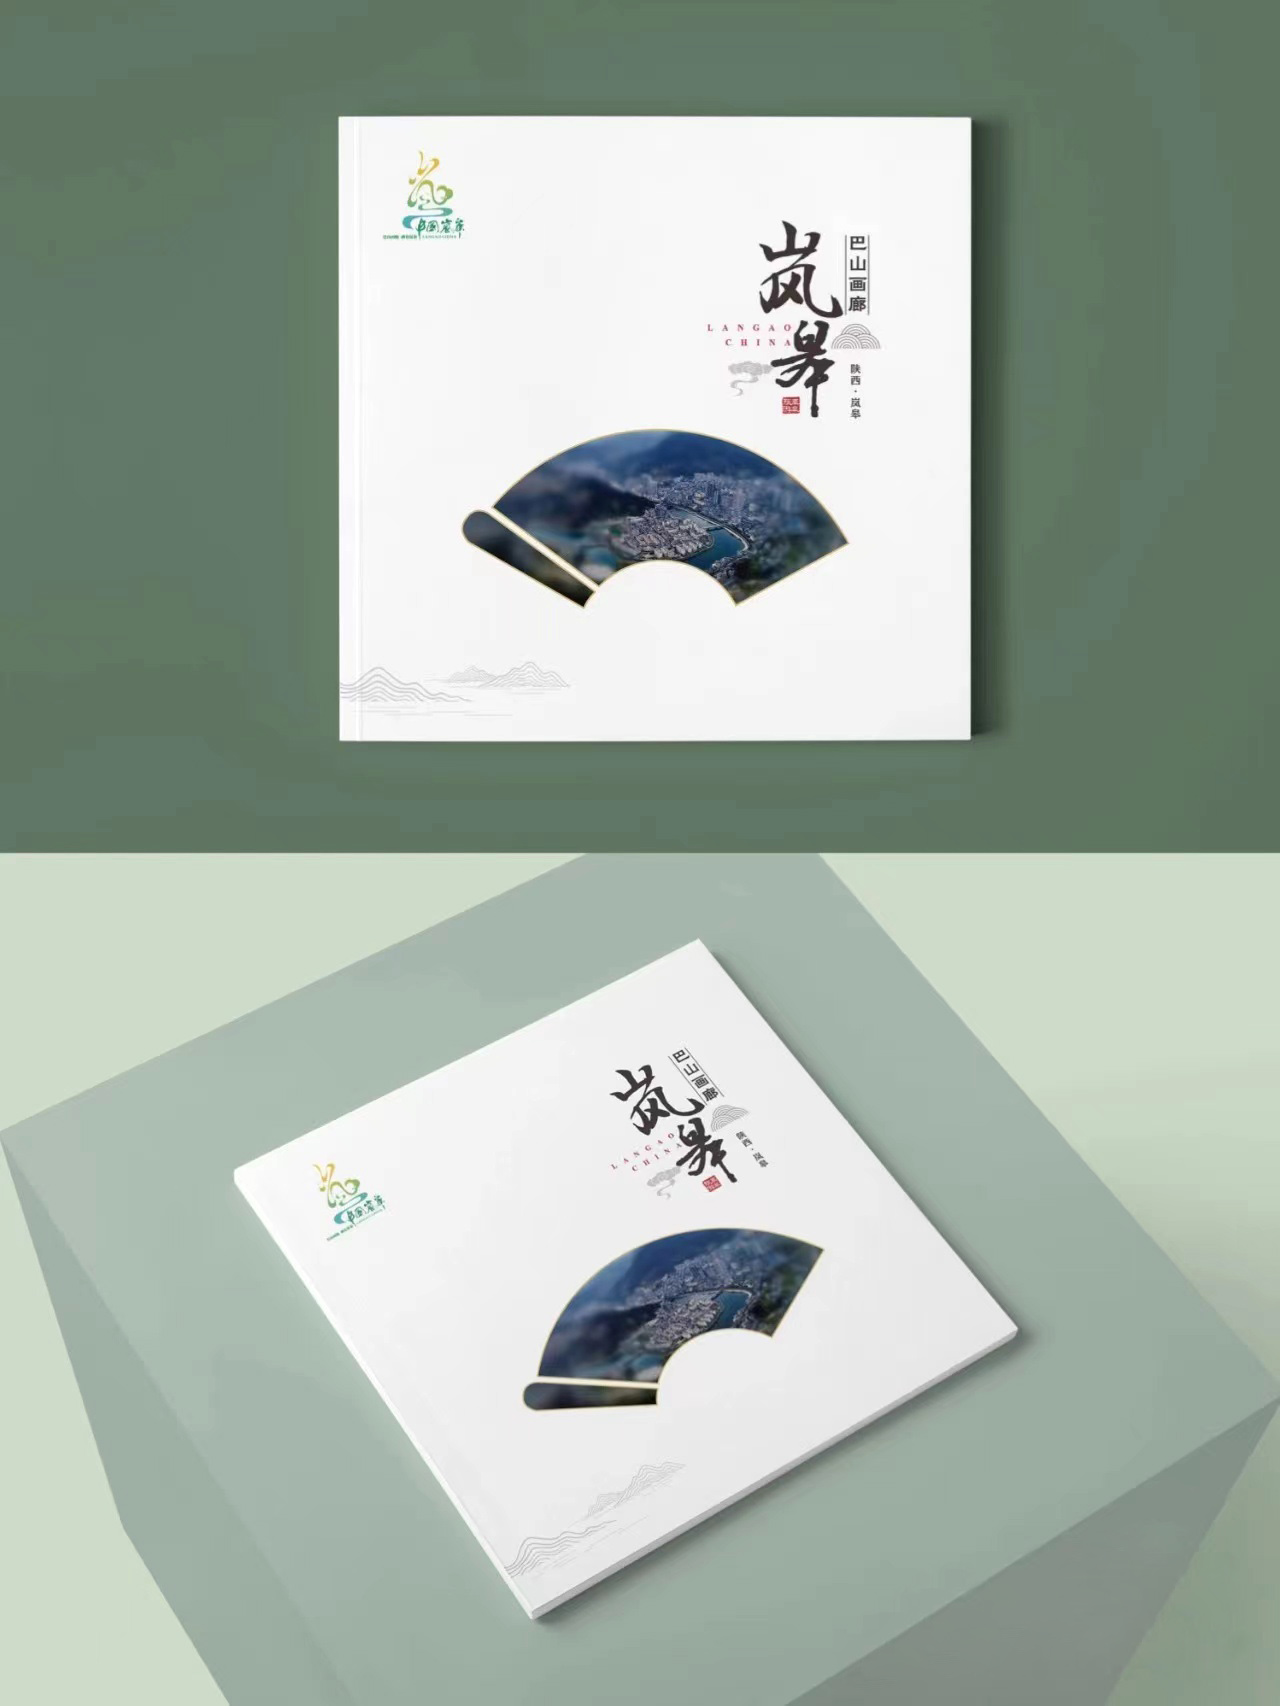 东莞企业画册设计-画册封面镂空,有何特别?